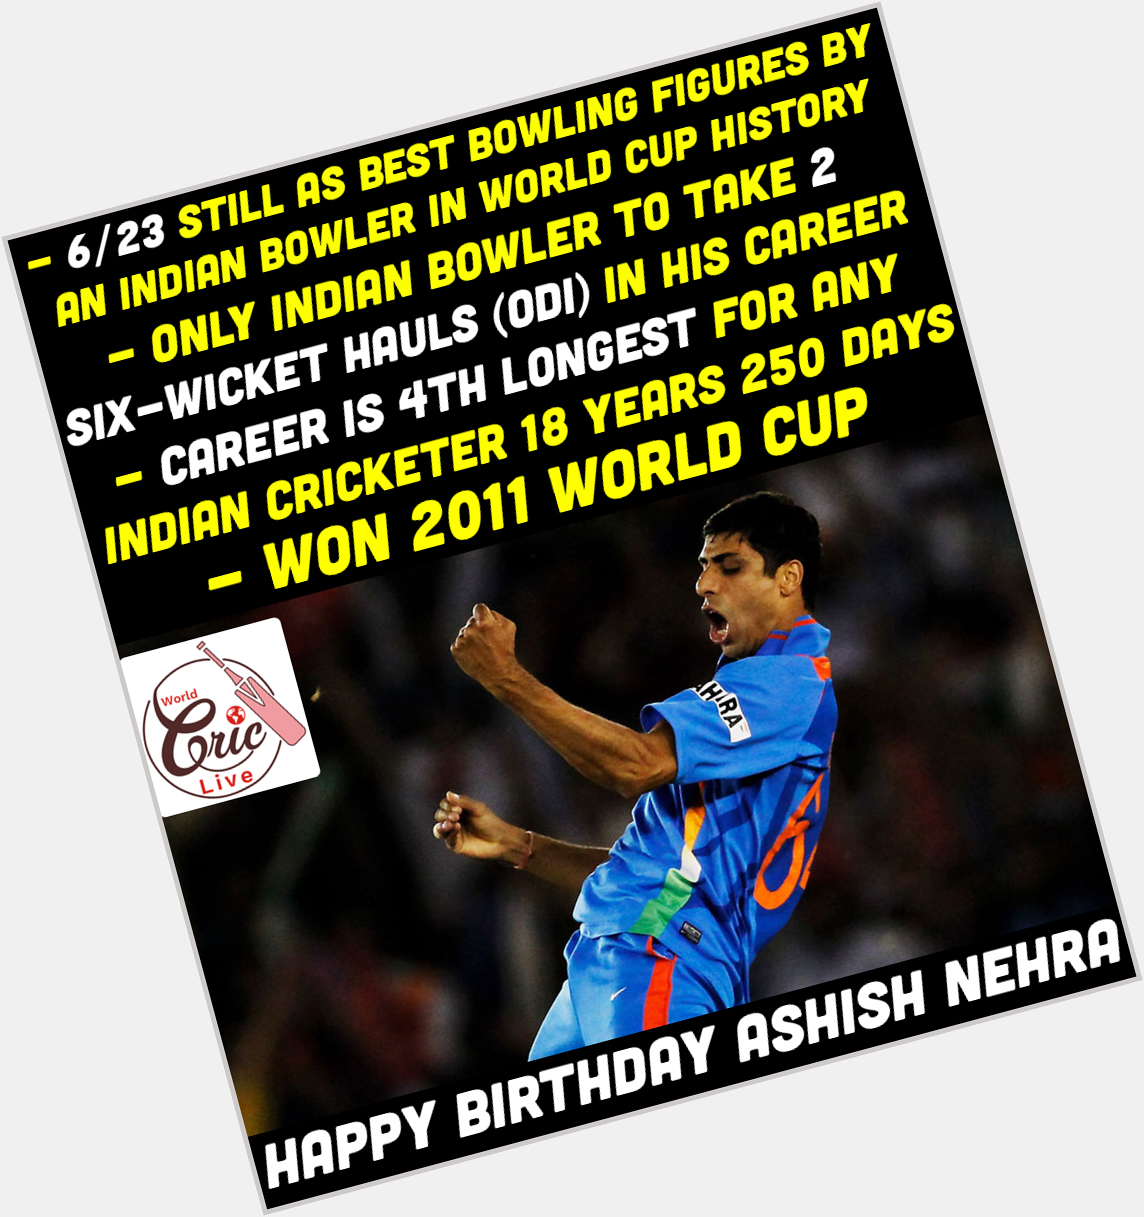 Happy Birthday Ashish Nehra  